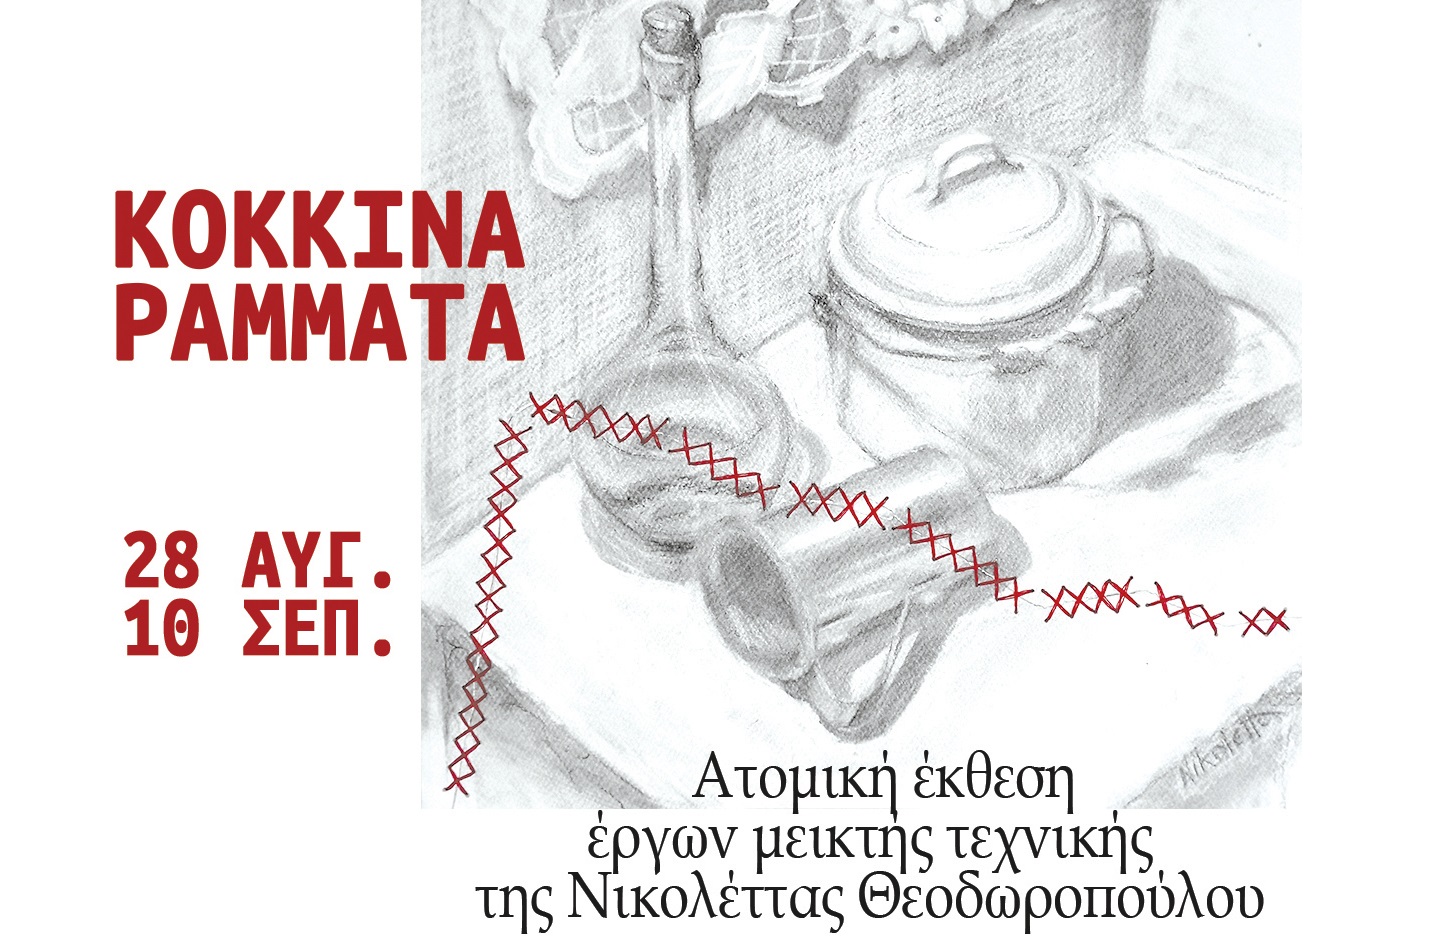 Κόκκινα ράμματα: Έκθεση έργων μεικτής τεχνικής της Νικολέττας Θεοδωροπούλου στο Αχίλλειο